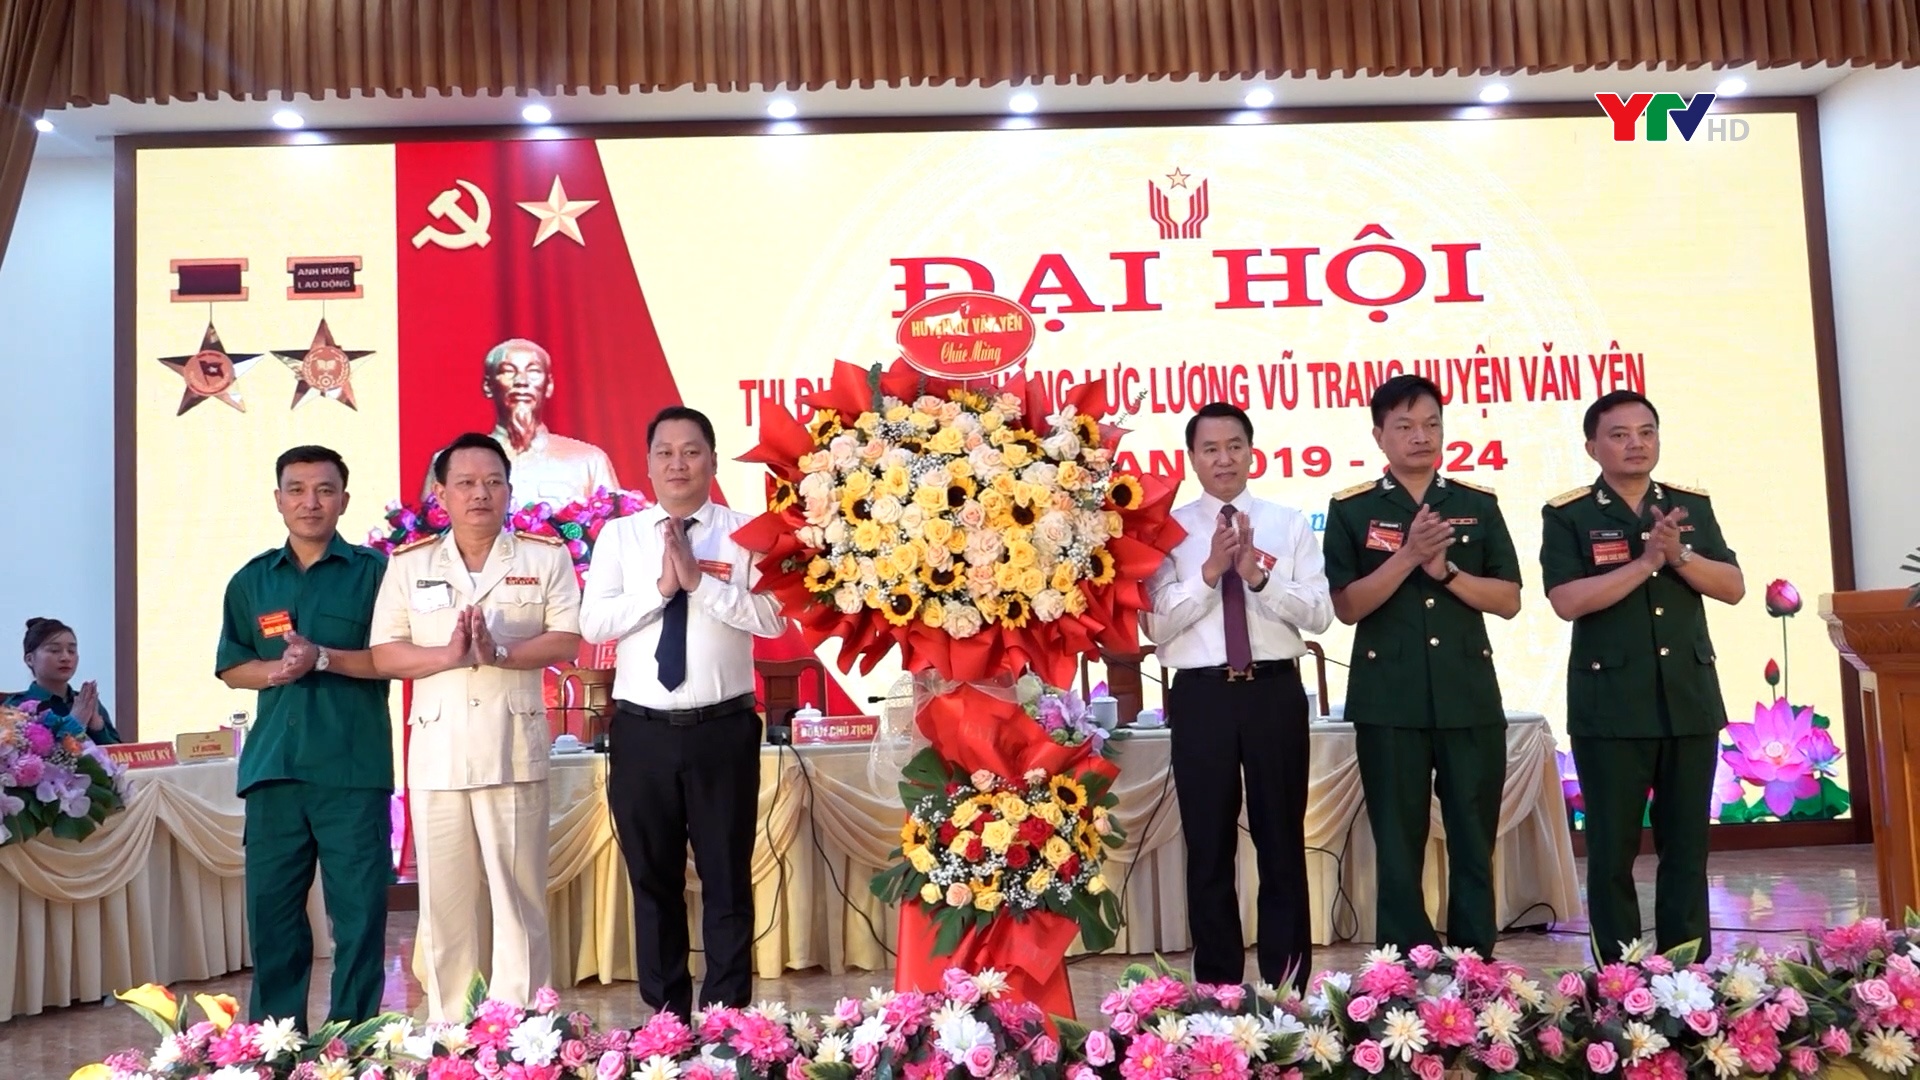 Đại hội Thi đua Quyết thắng lực lượng vũ trang huyện Văn Yên giai đoạn 2019-2024